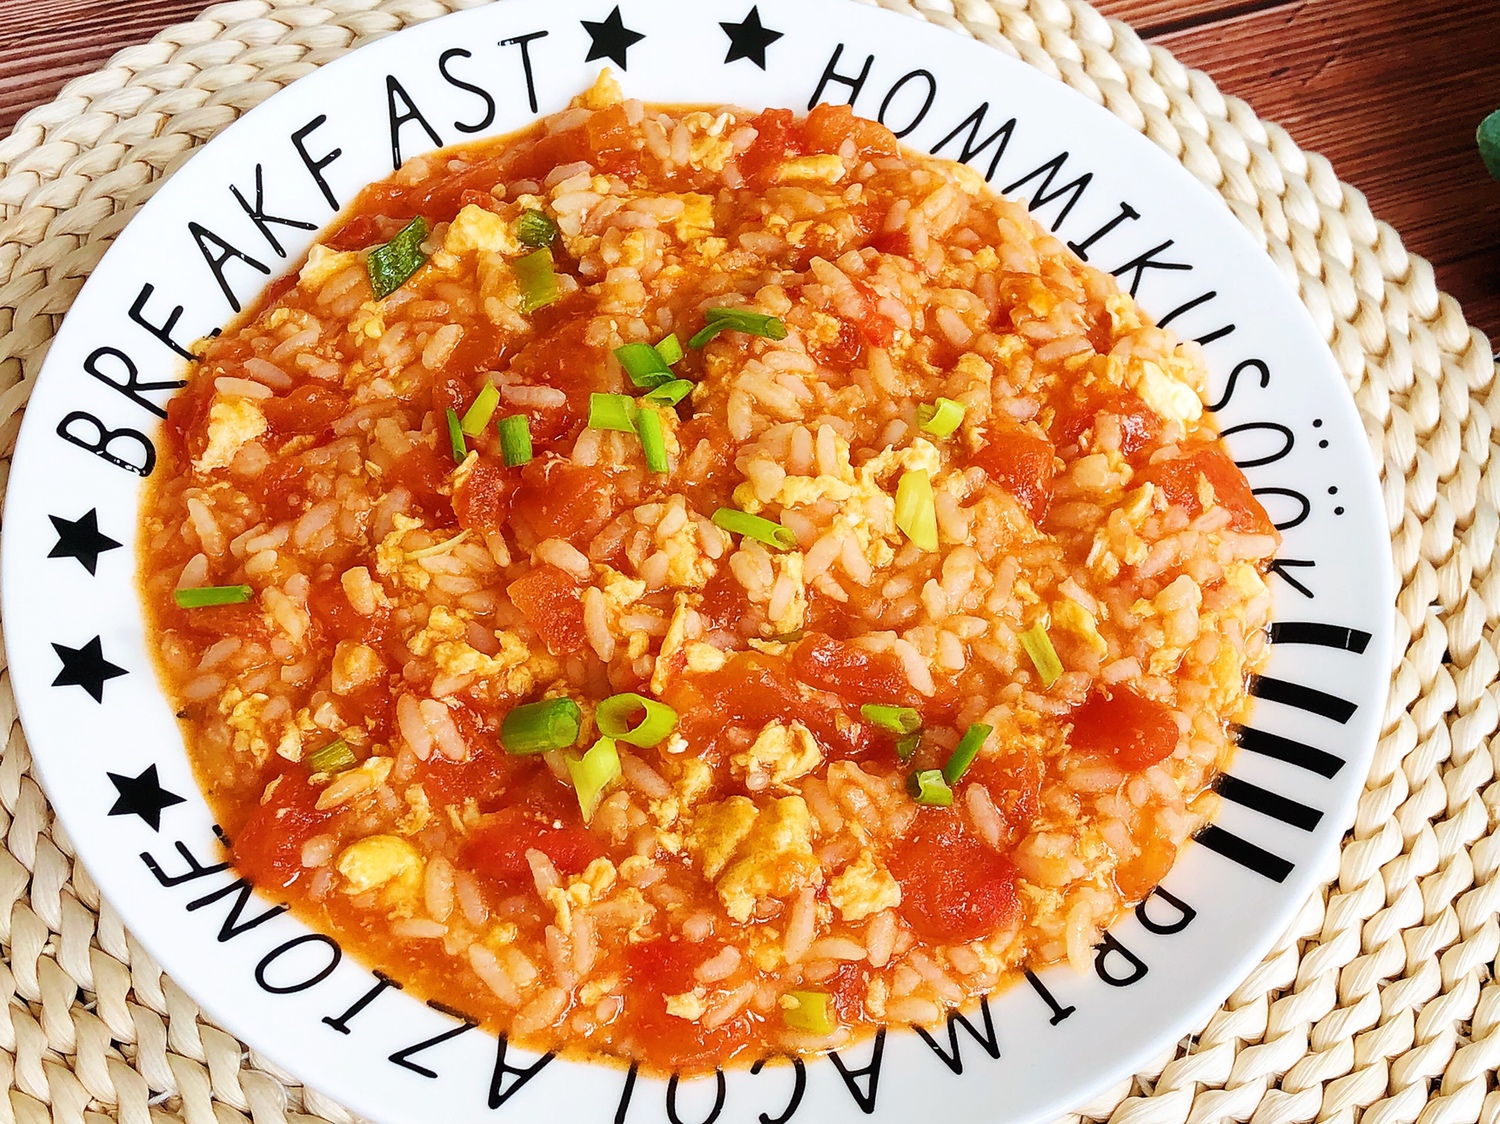 剩米饭这样做❗️番茄鸡蛋浓汤烩饭❗️连吃三碗都不够的做法